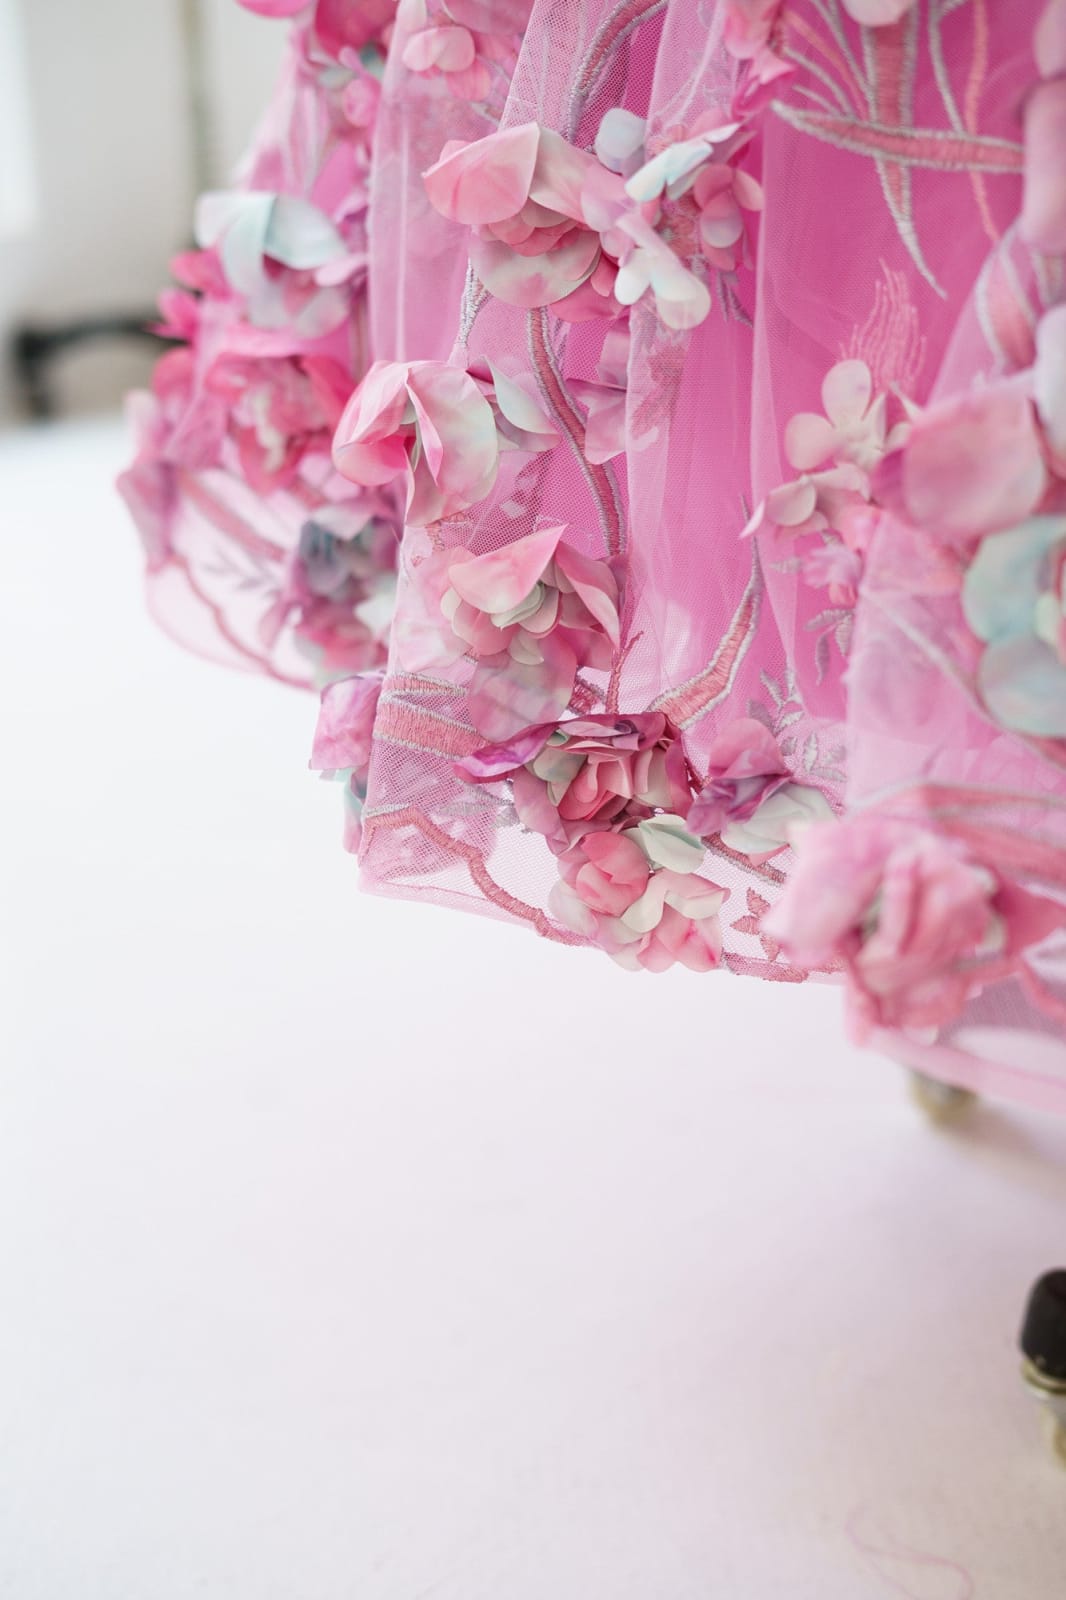 Hot Pink 3D Flower Spaghetti Straps Corset Back Wedding Flower Girl Dress